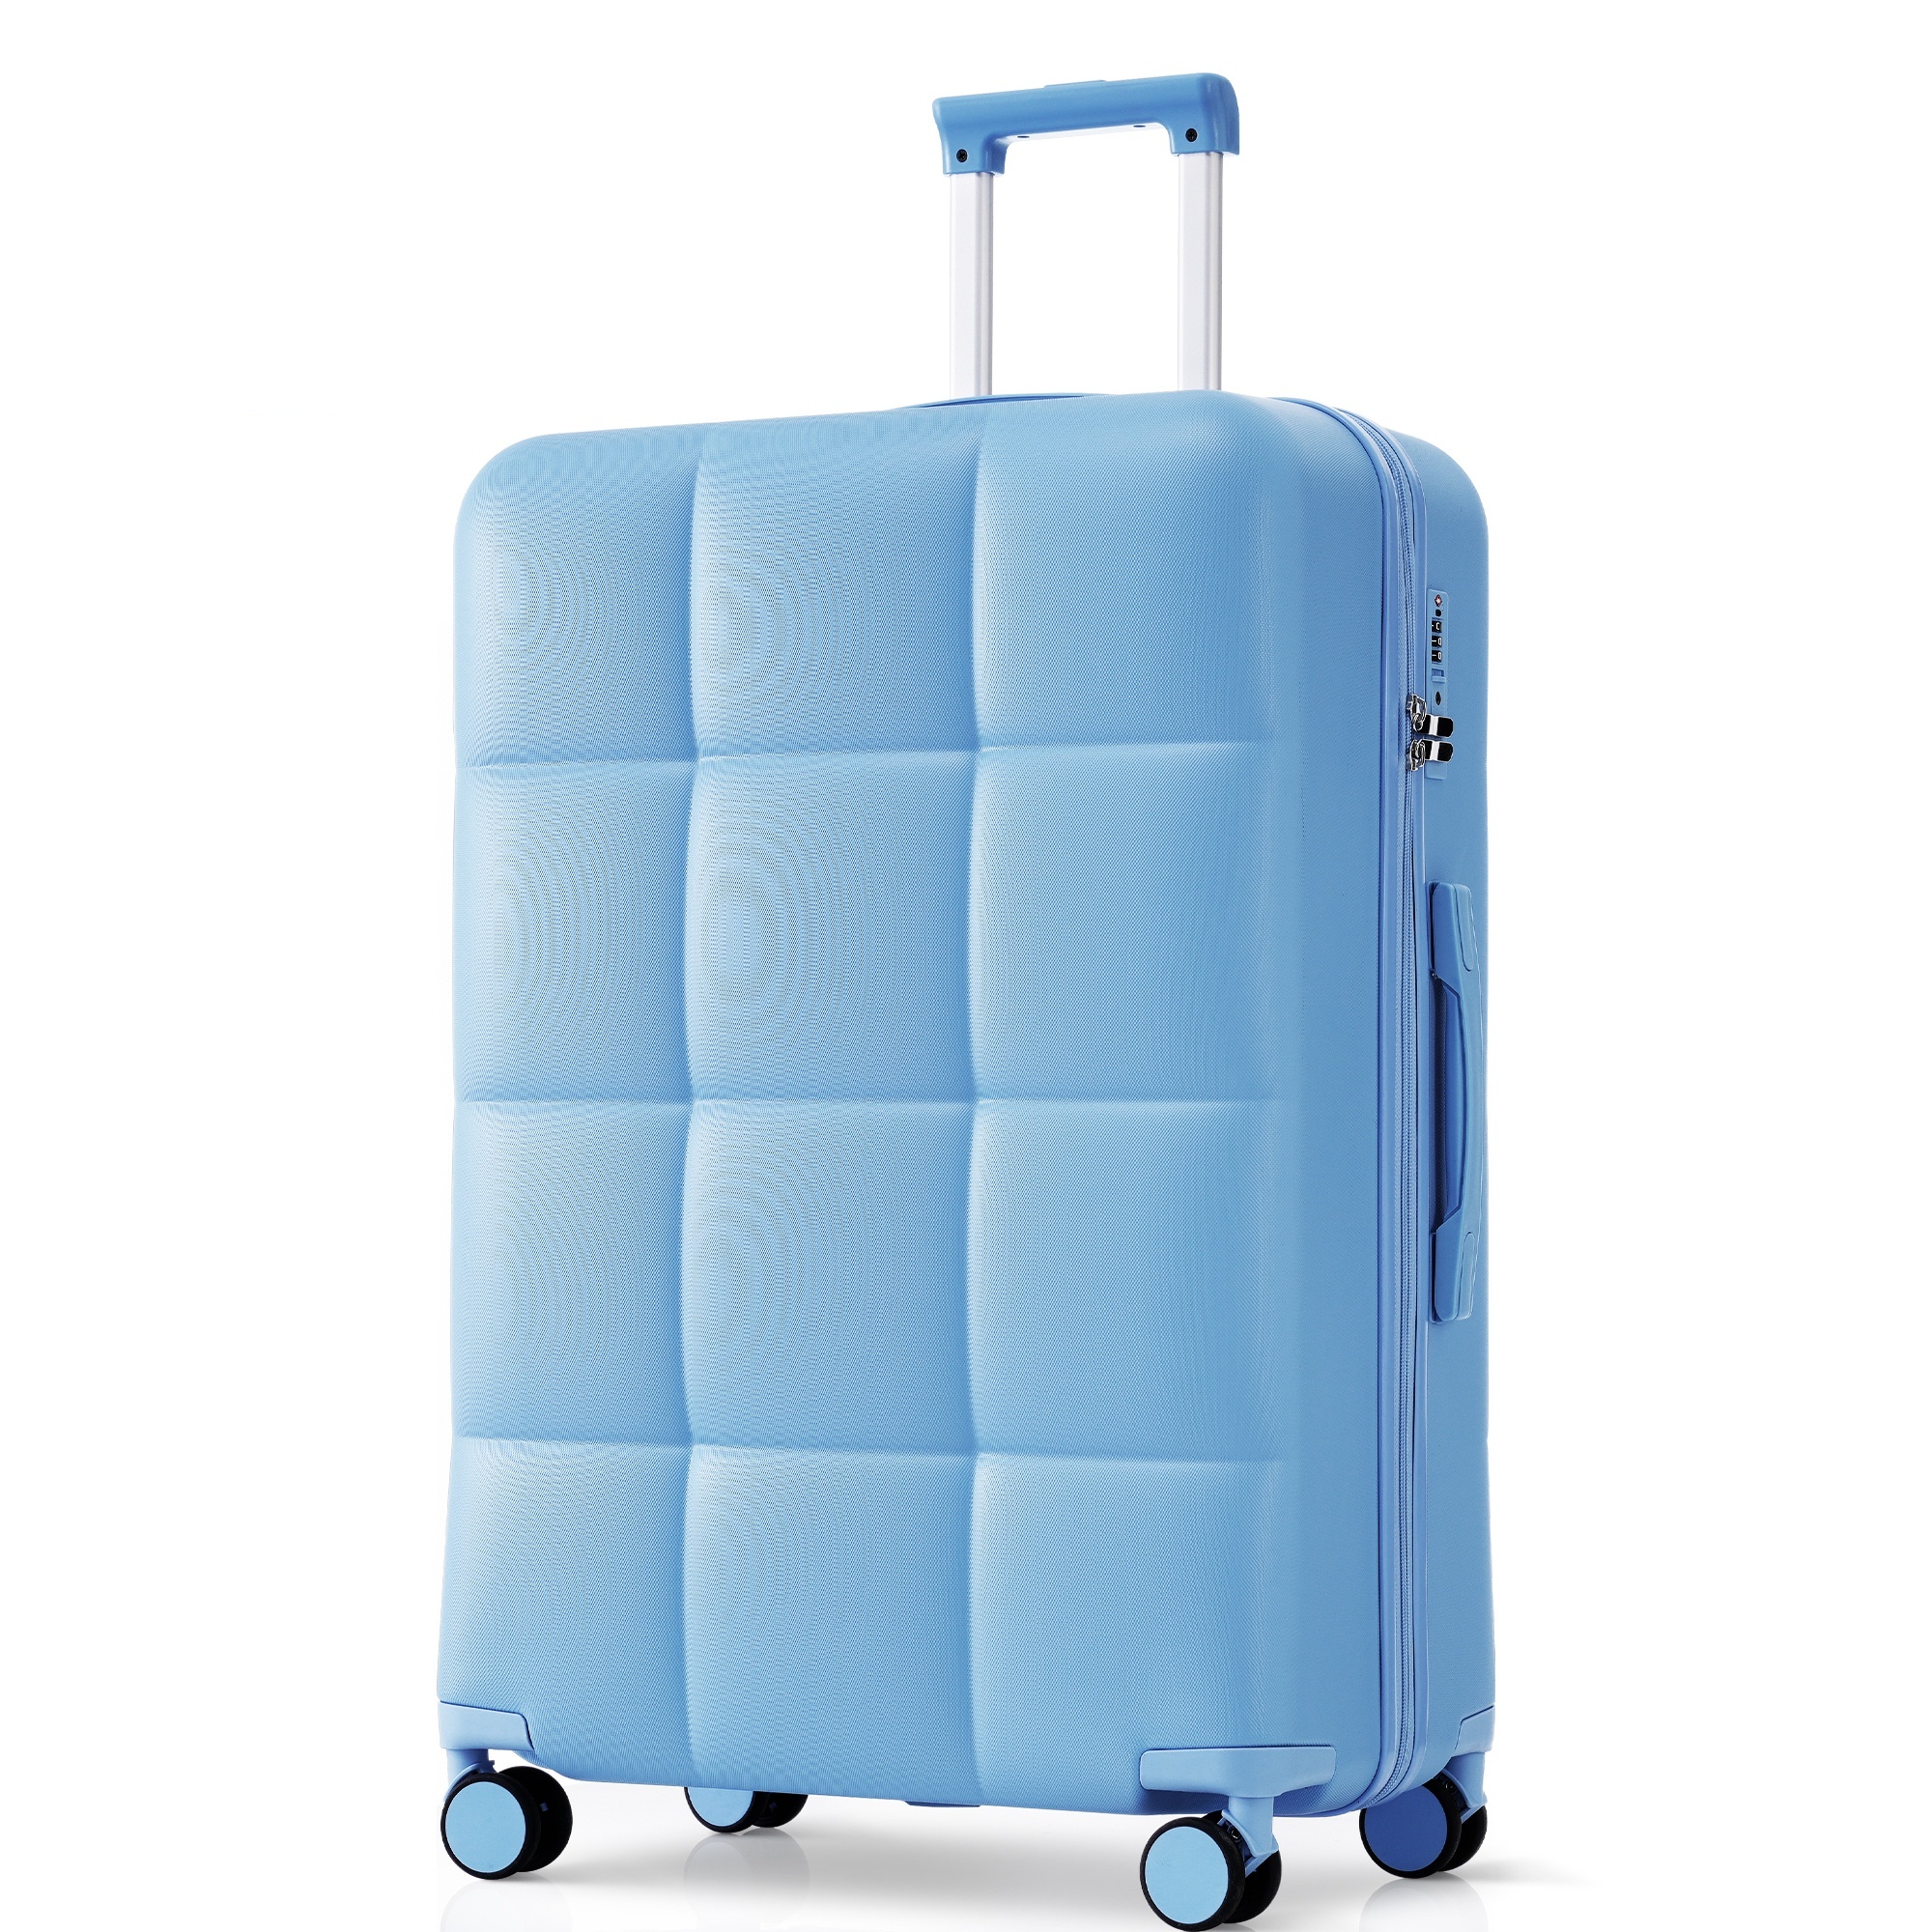 スーツケース キャリーバッグ キャリーケース Lサイズ 大型 超軽量 ファスナー式 TSAロック搭載 フック機能付き 360度回転 旅行 おしゃれ 軽い